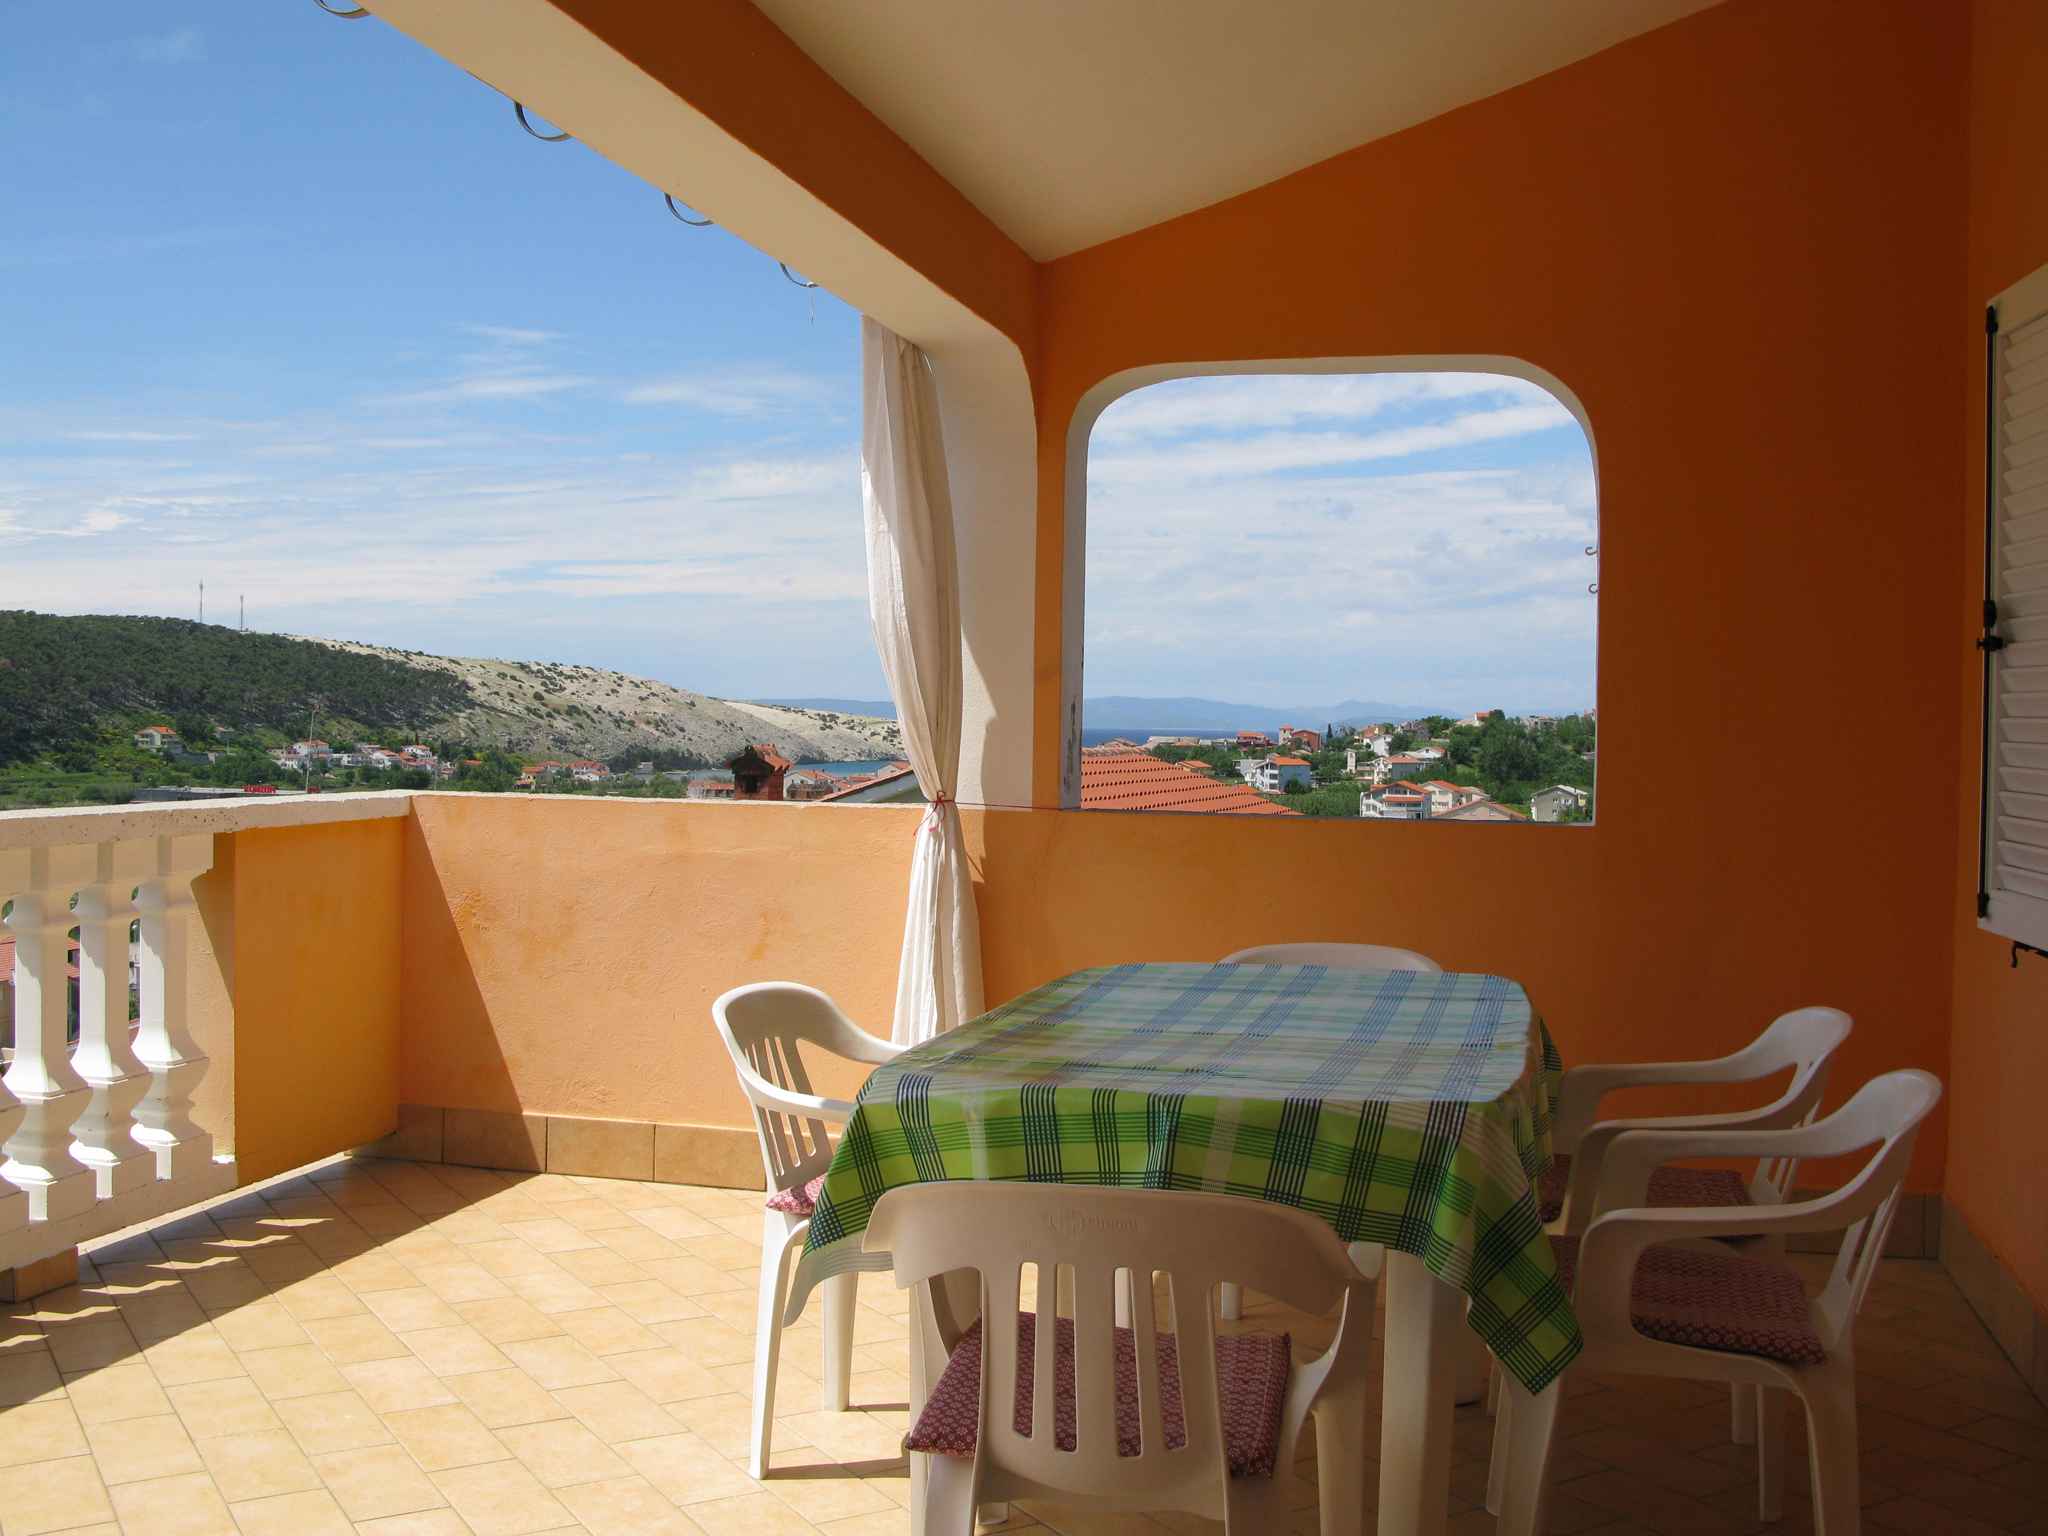 Ferienwohnung mit Terrasse und teilweise Meerblick   kroatische Inseln